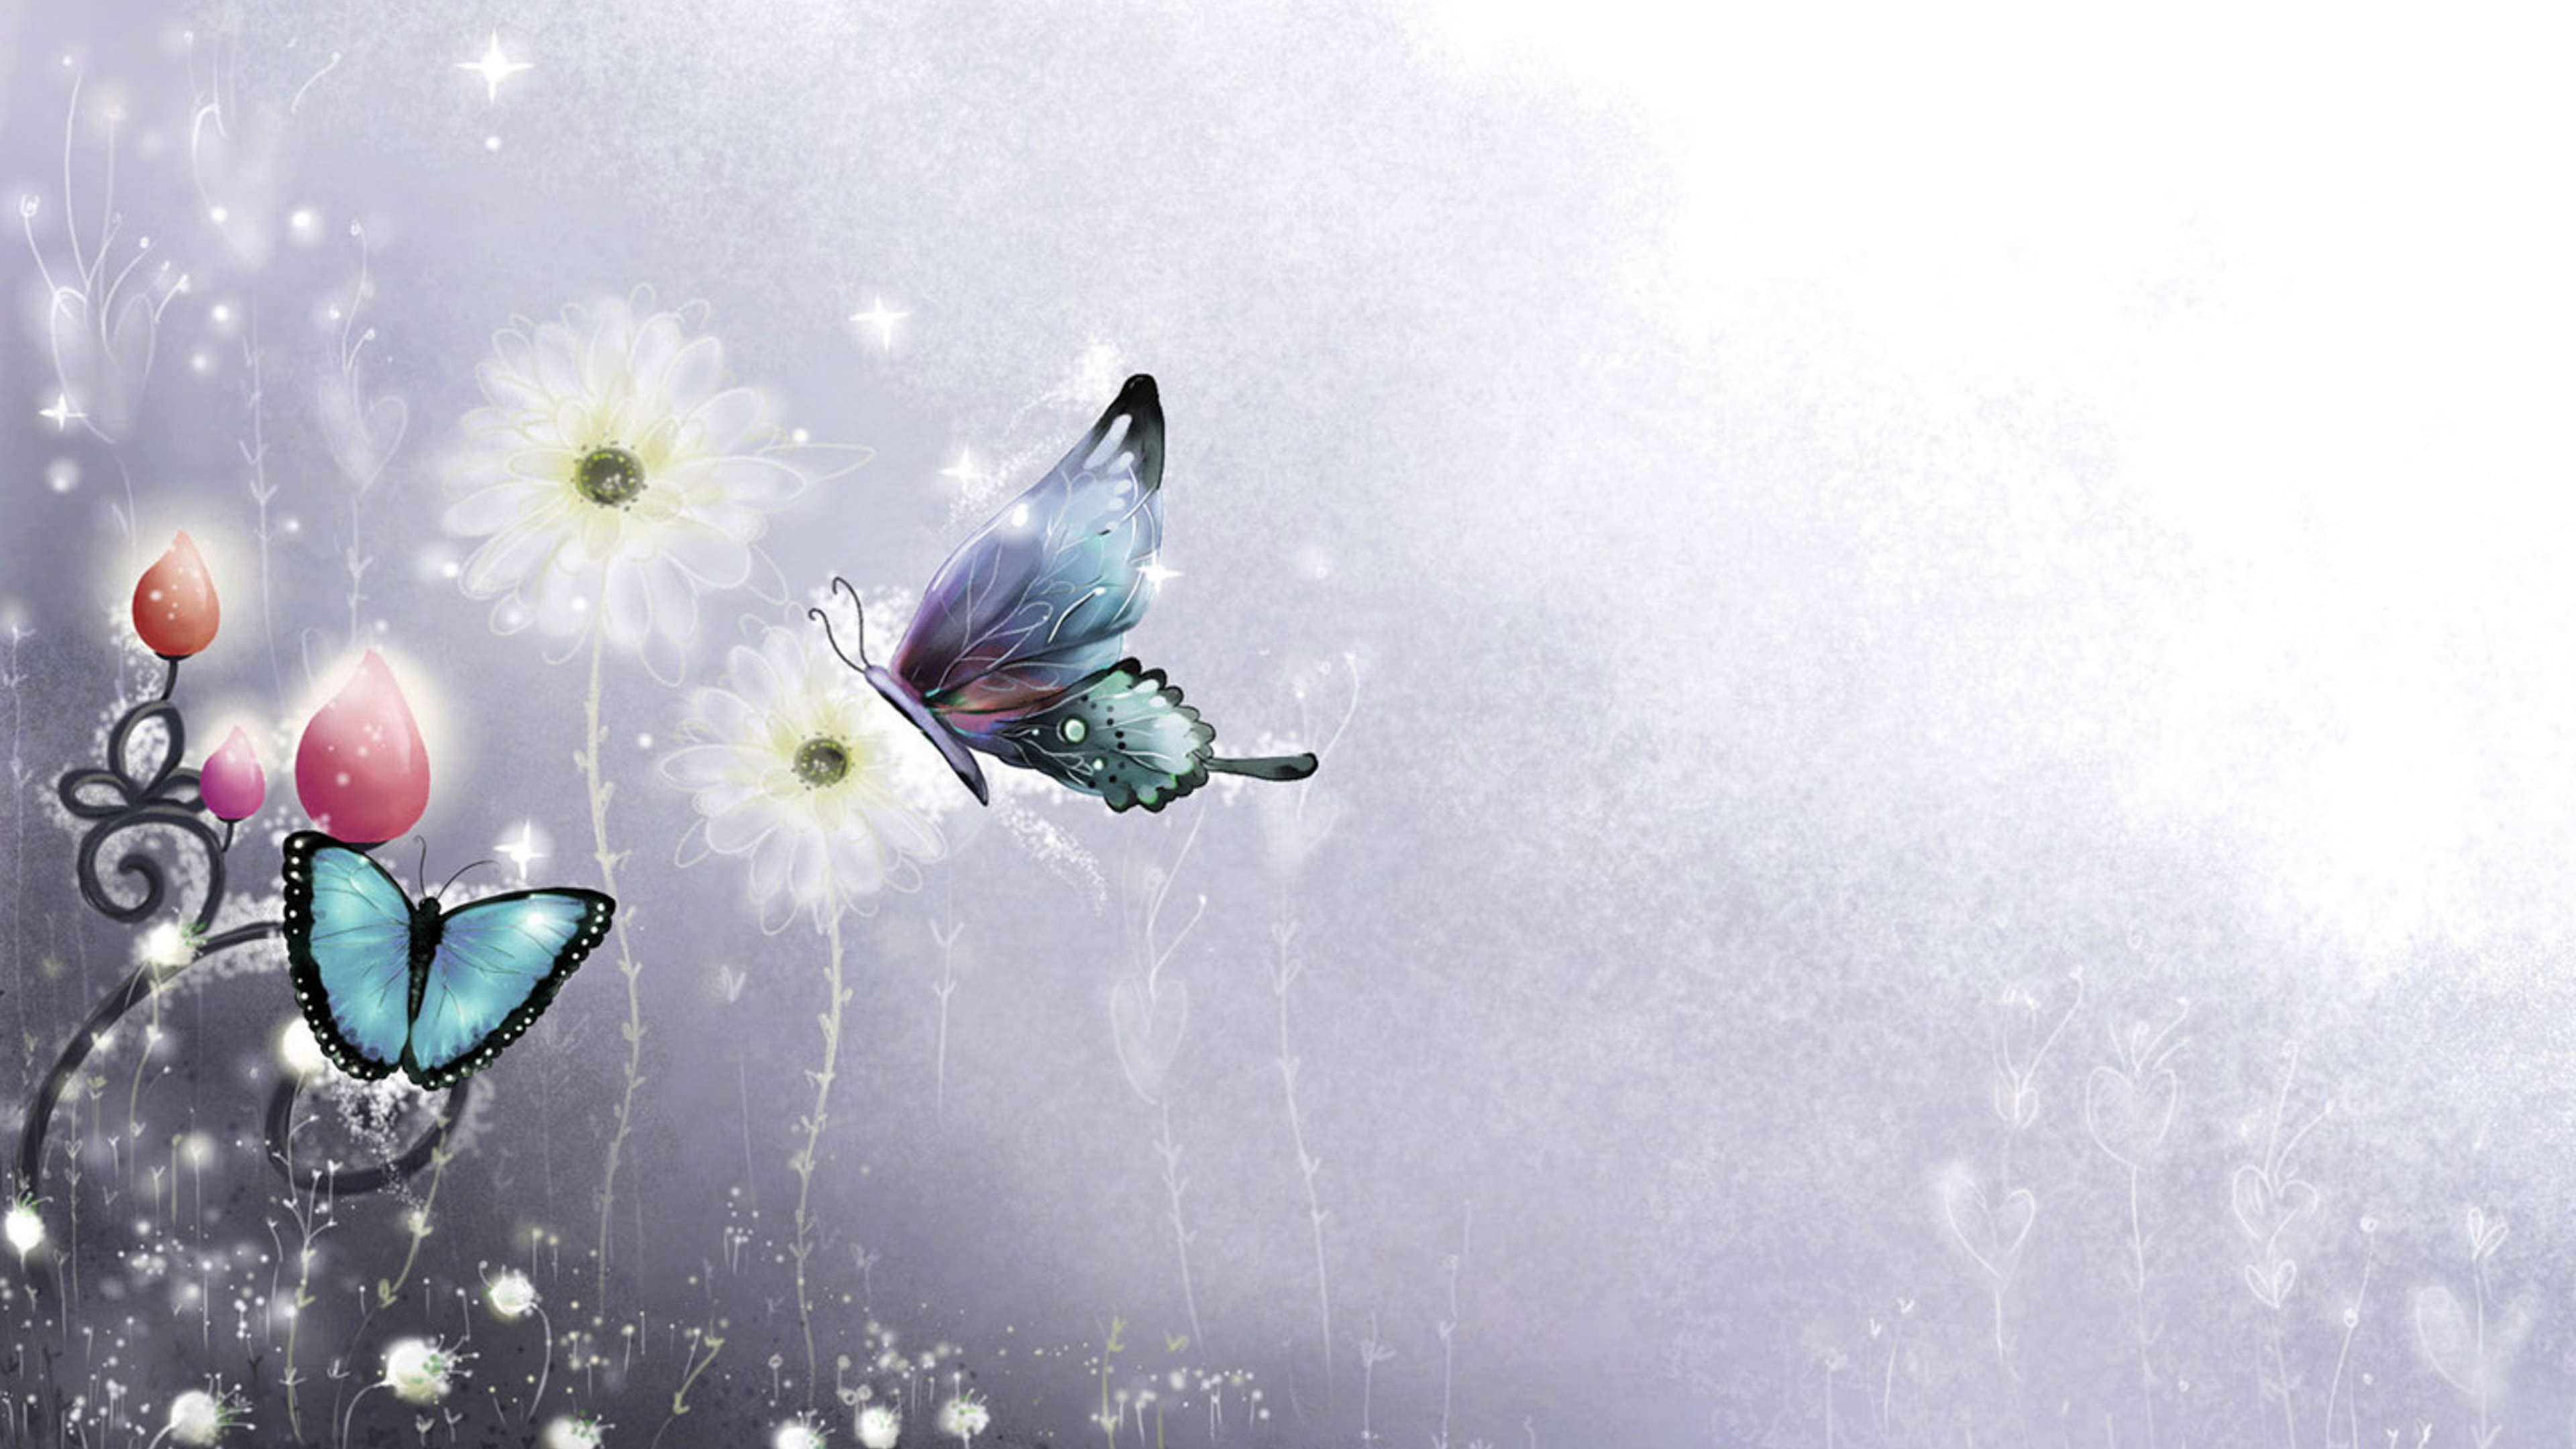 飞蛾和蝴蝶, 图形设计, 翼, 昆虫, 天空 壁纸 3840x2160 允许